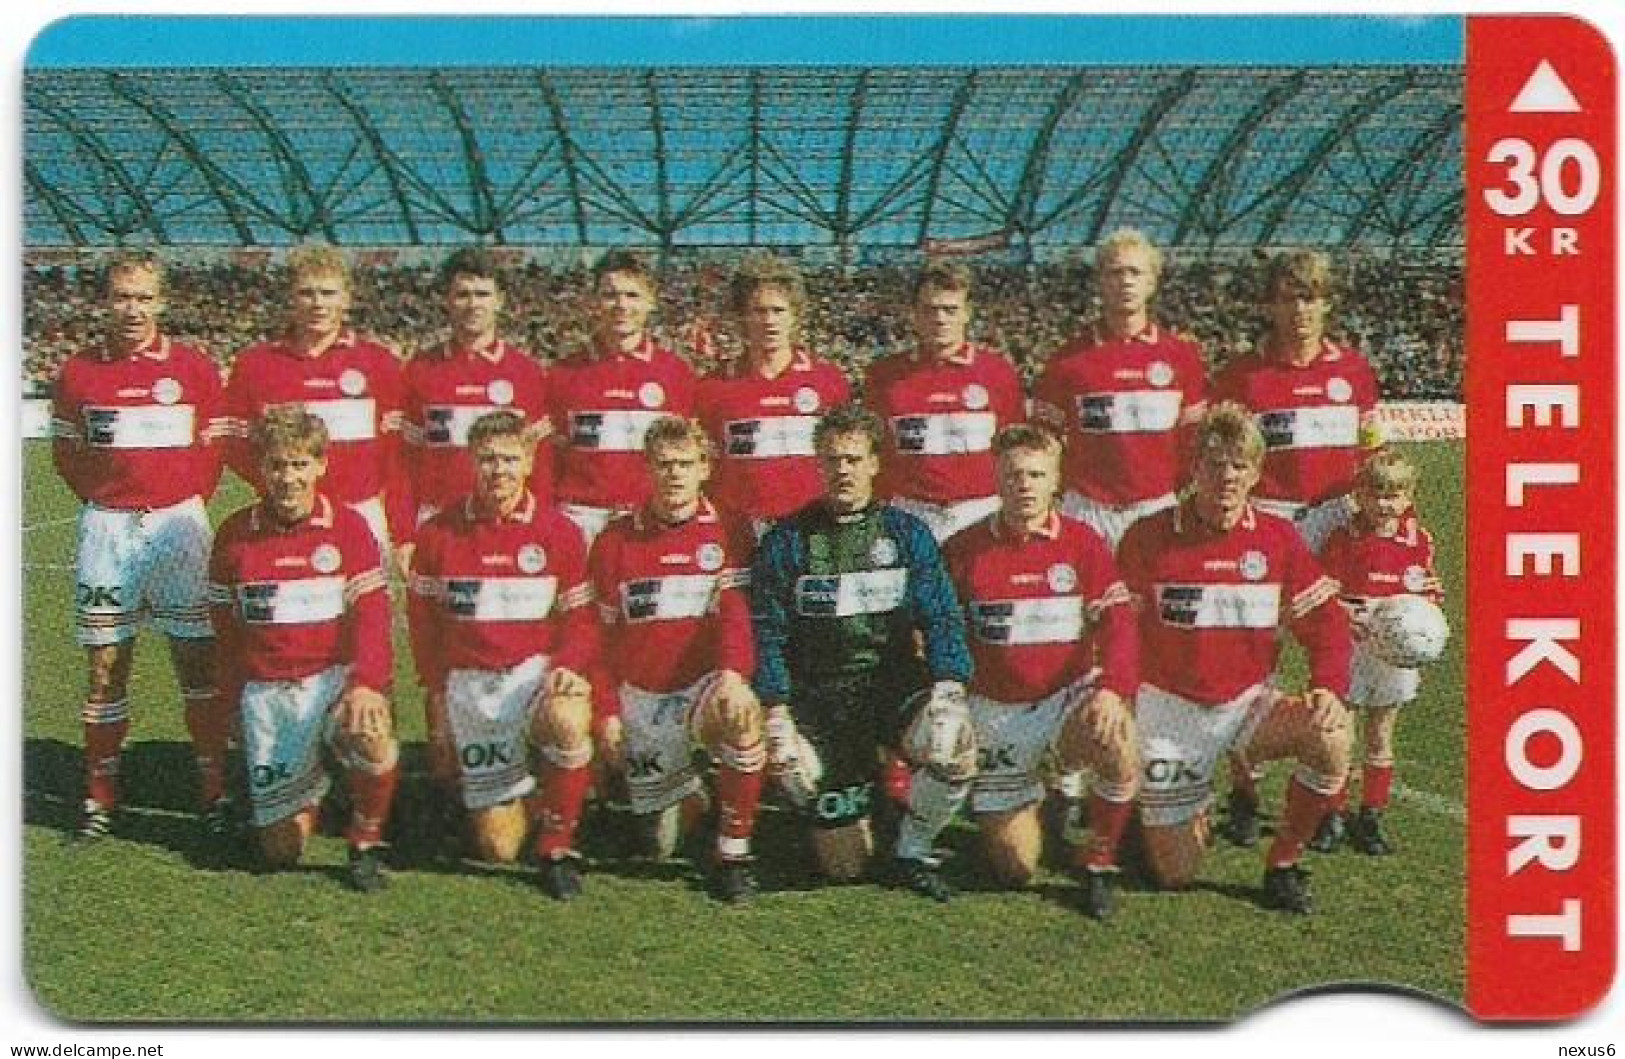 Denmark - Jydsk - Silkeborg Football Team - TDJR007 - 05.1995, 6.000ex, (Serial 2530) 30kr, Used - Denemarken